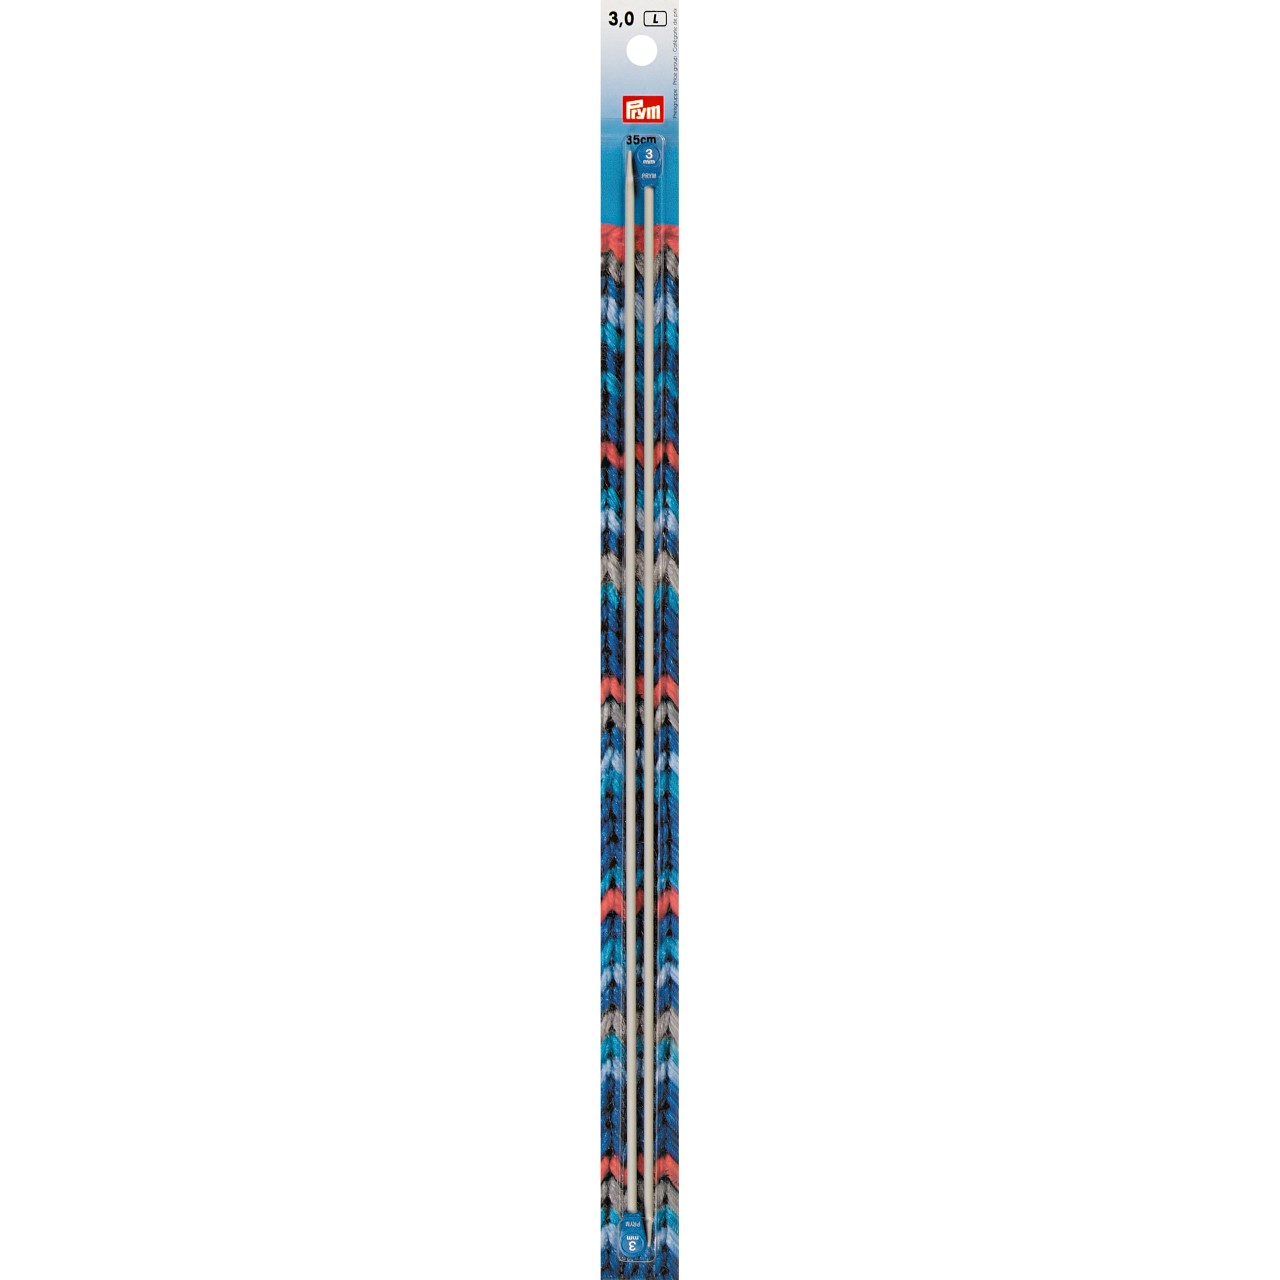 3mm, 35cm - Prym Knitting Needles